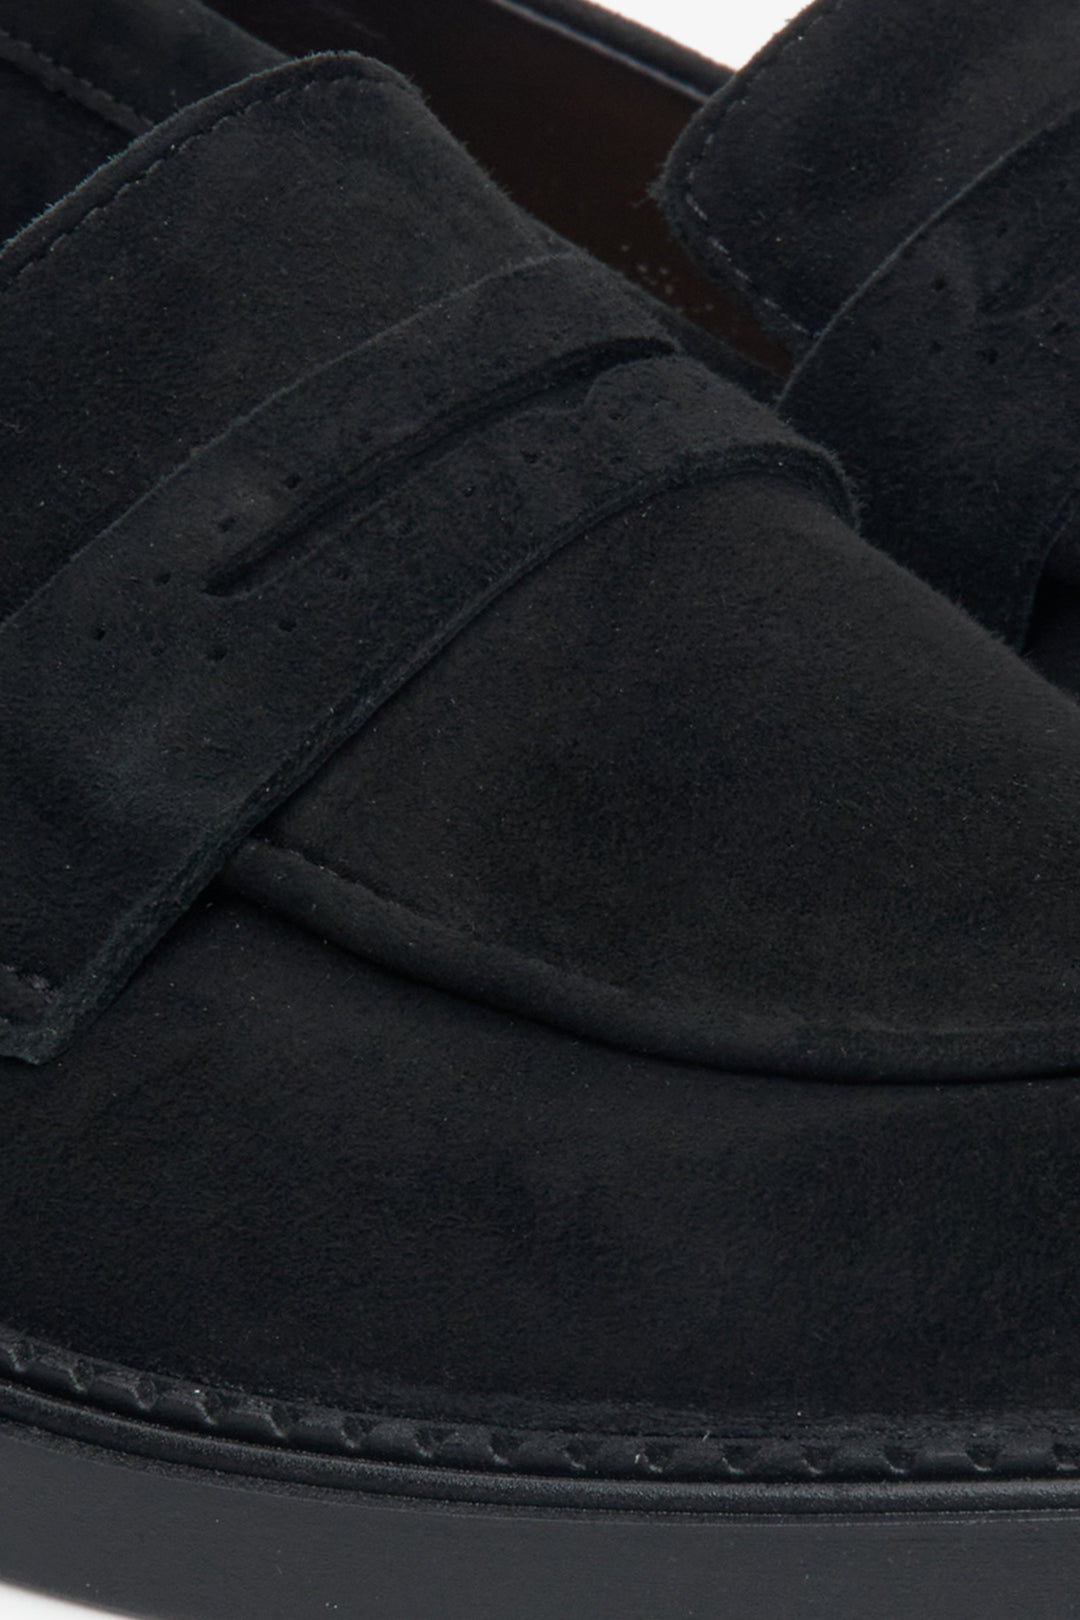 Buty mokasyny damskie z weluru naturalnego w kolorze czarnym - zbliżenie na detale.